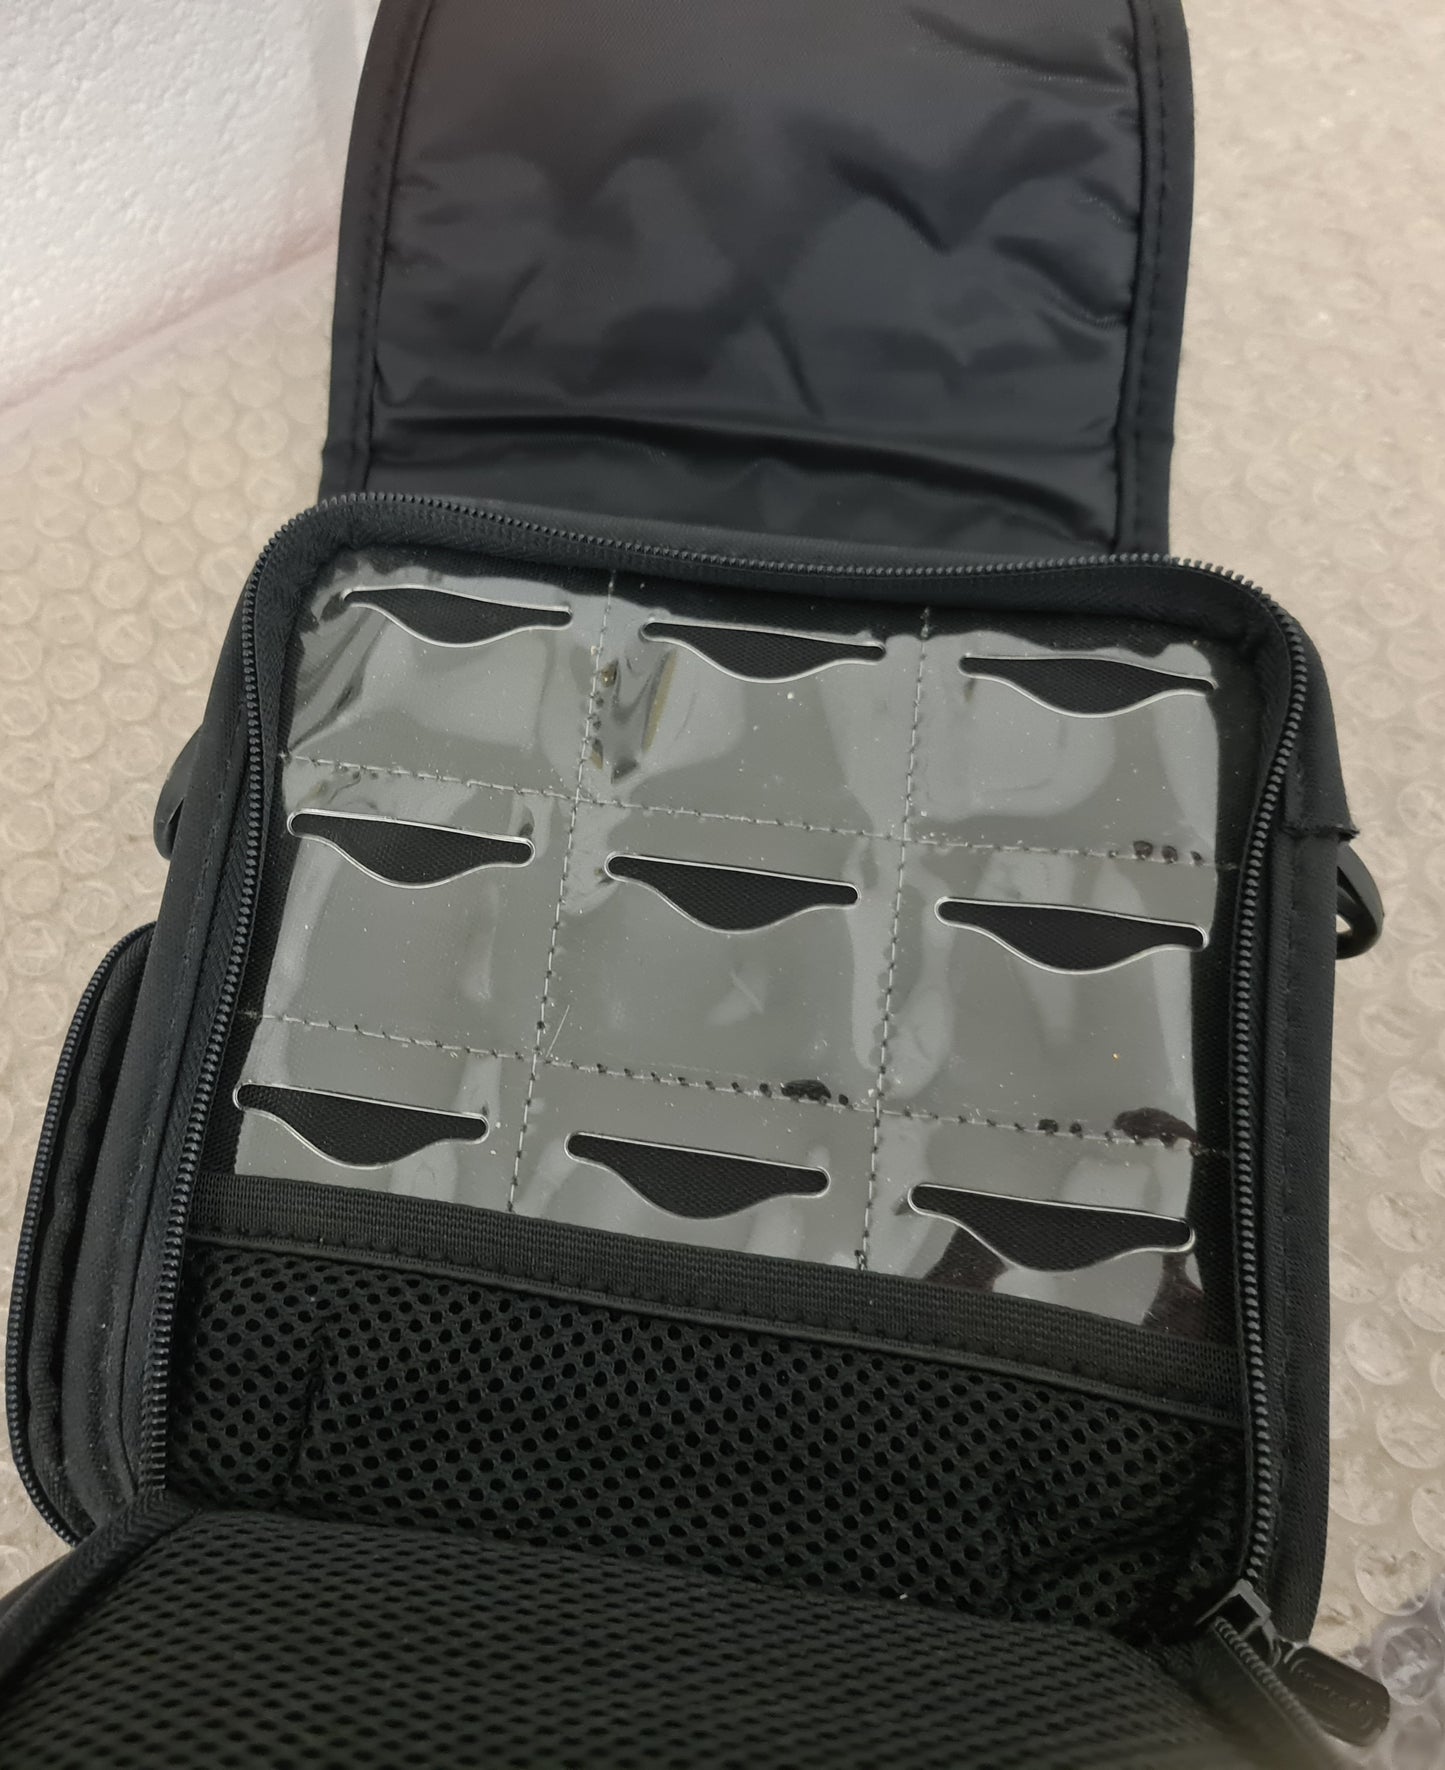 Official Nintendo DS Carry Bag Accessory